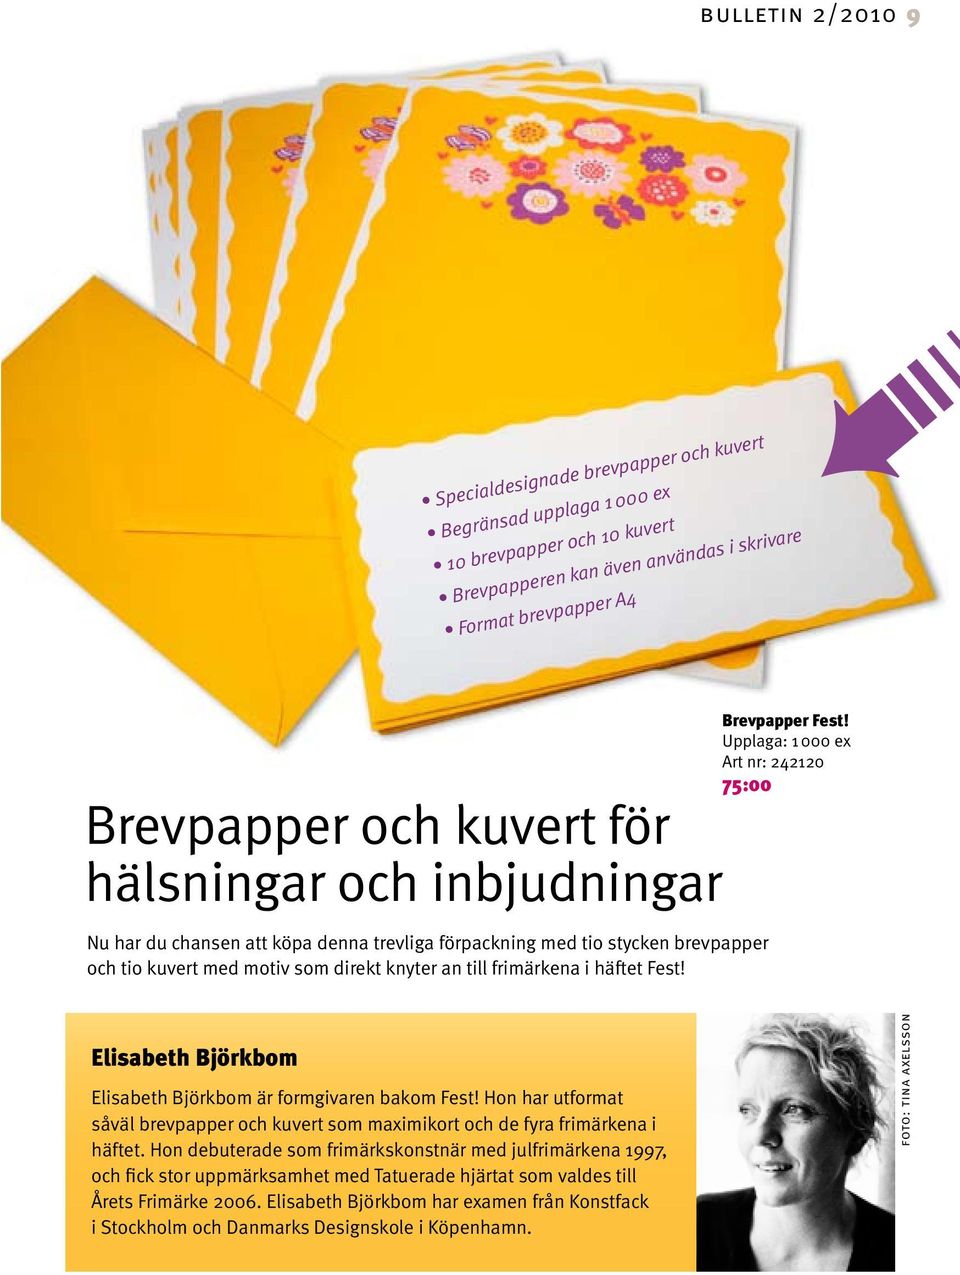 Brevpapper Fest! Upplaga: 1 000 ex Art nr: 242120 75:00 Elisabeth Björkbom Elisabeth Björkbom är formgivaren bakom Fest!